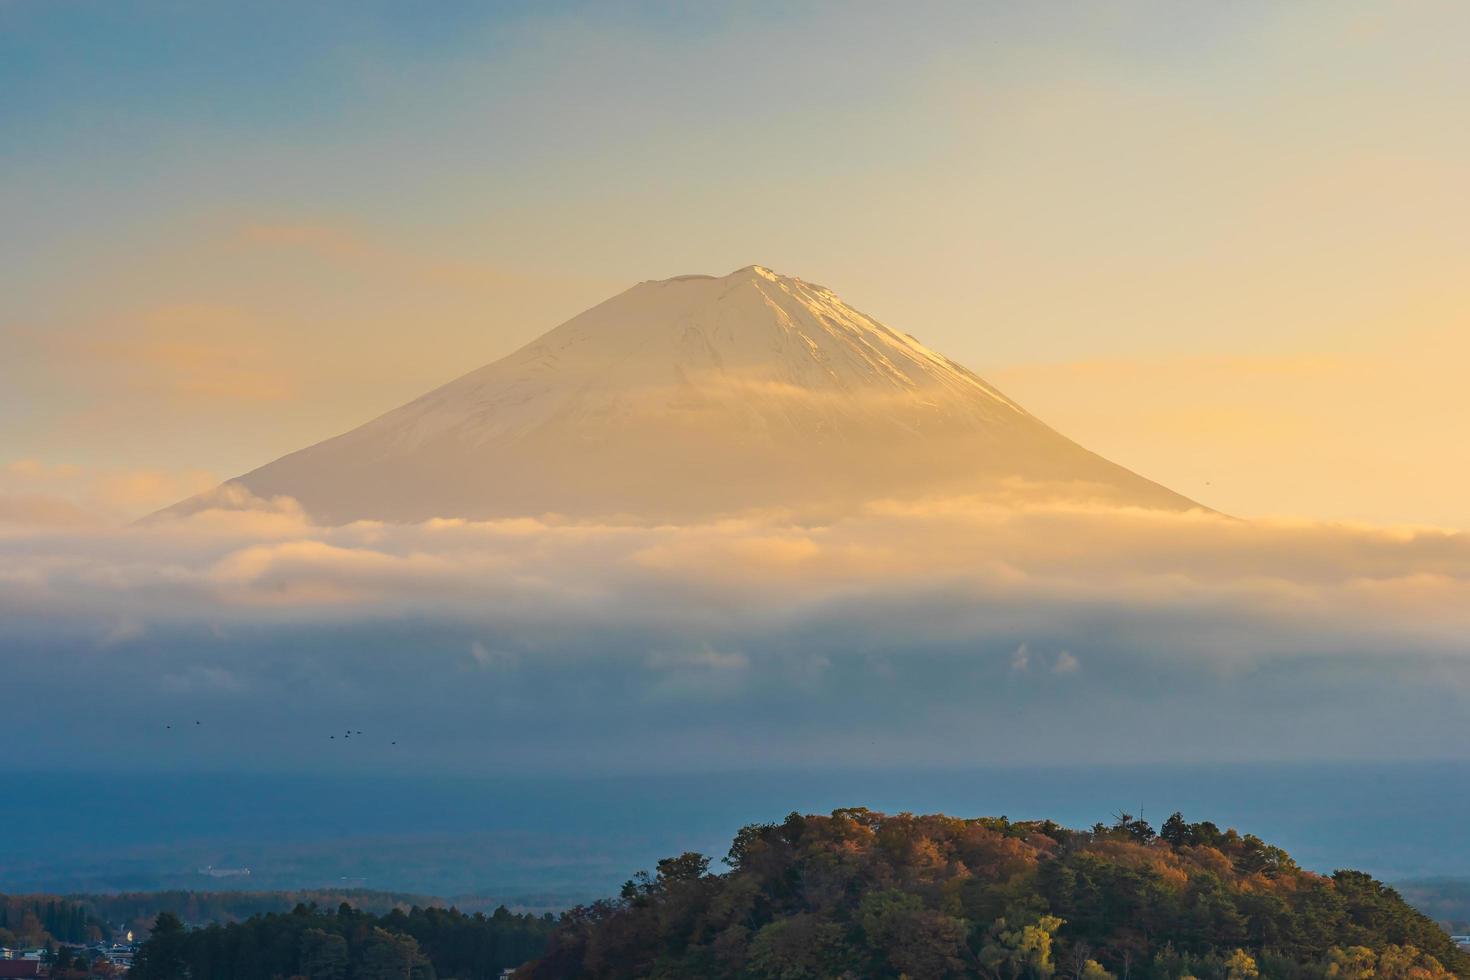 landskap vid Mt. fuji, yamanashi, japan foto